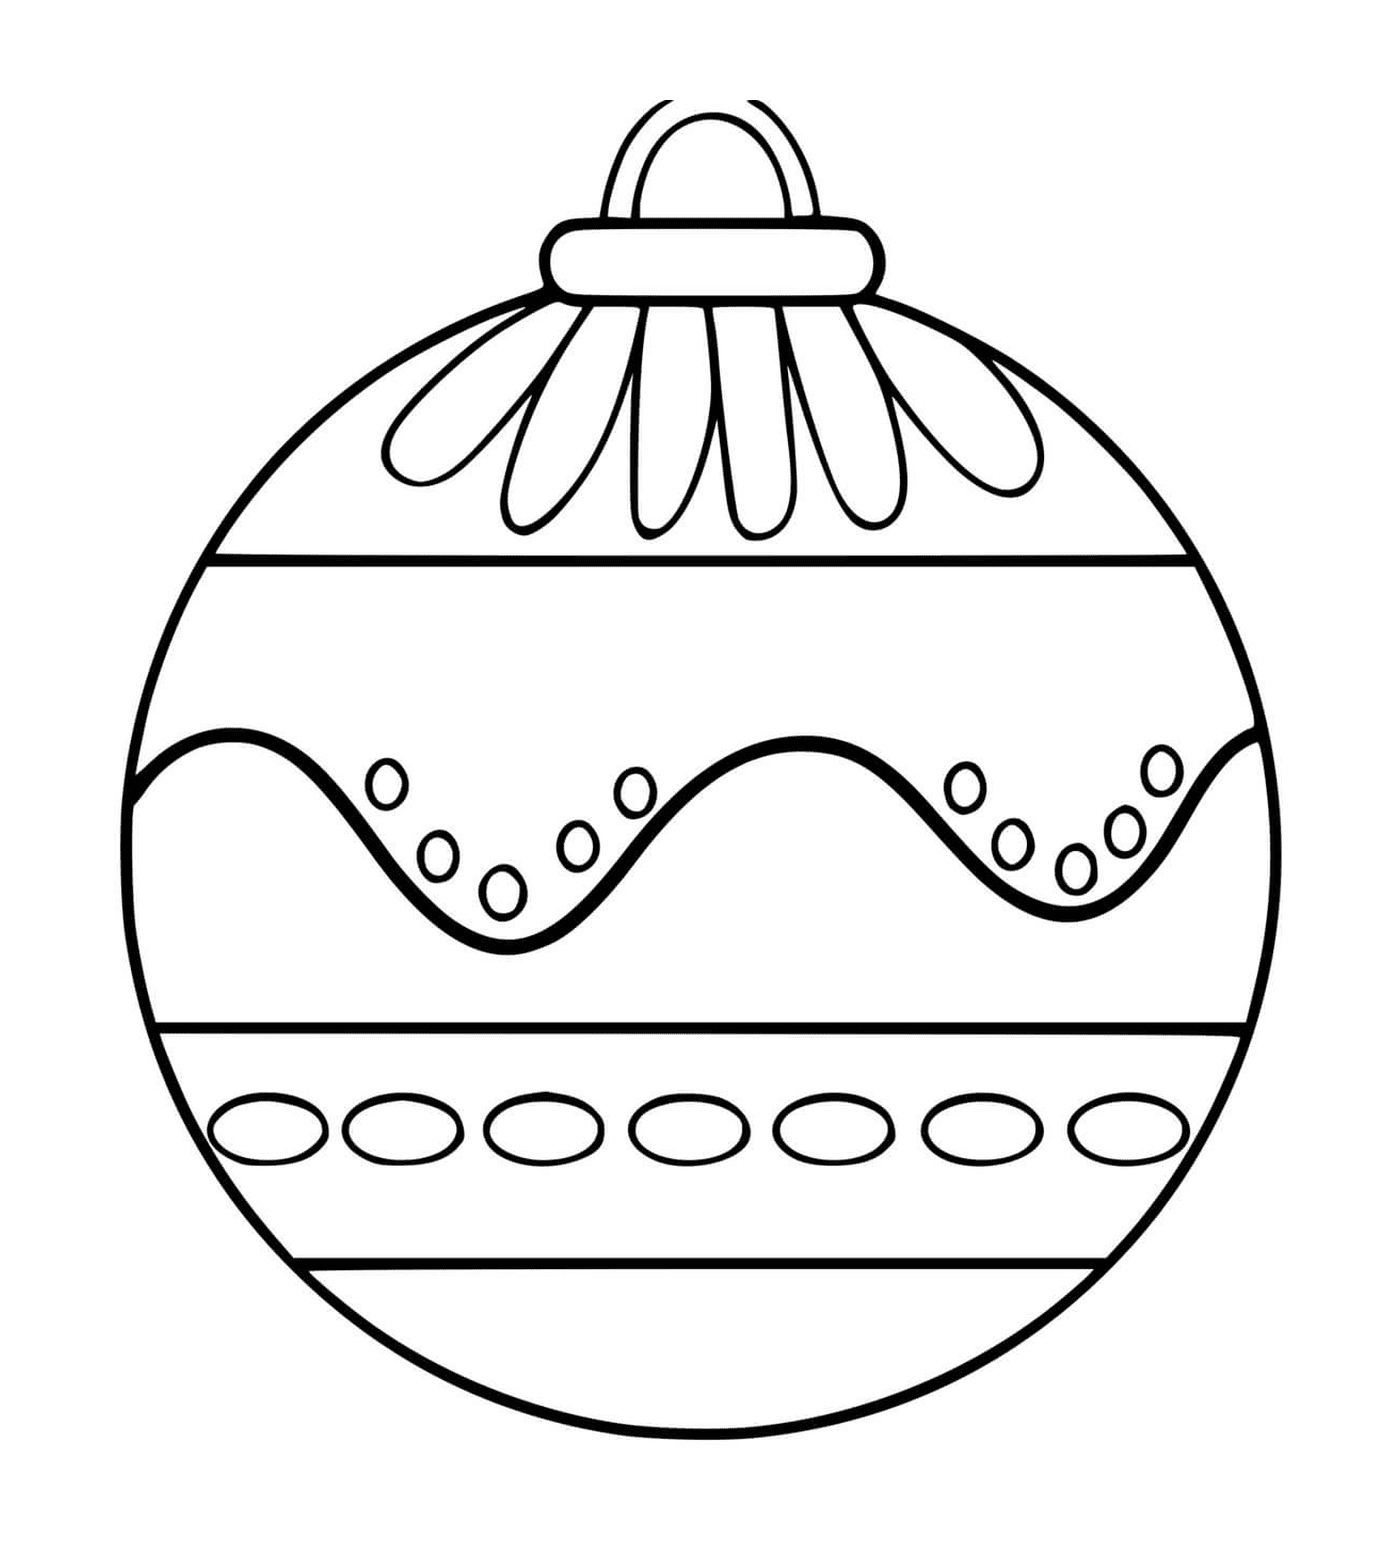  Uma bola de Natal com vários padrões 